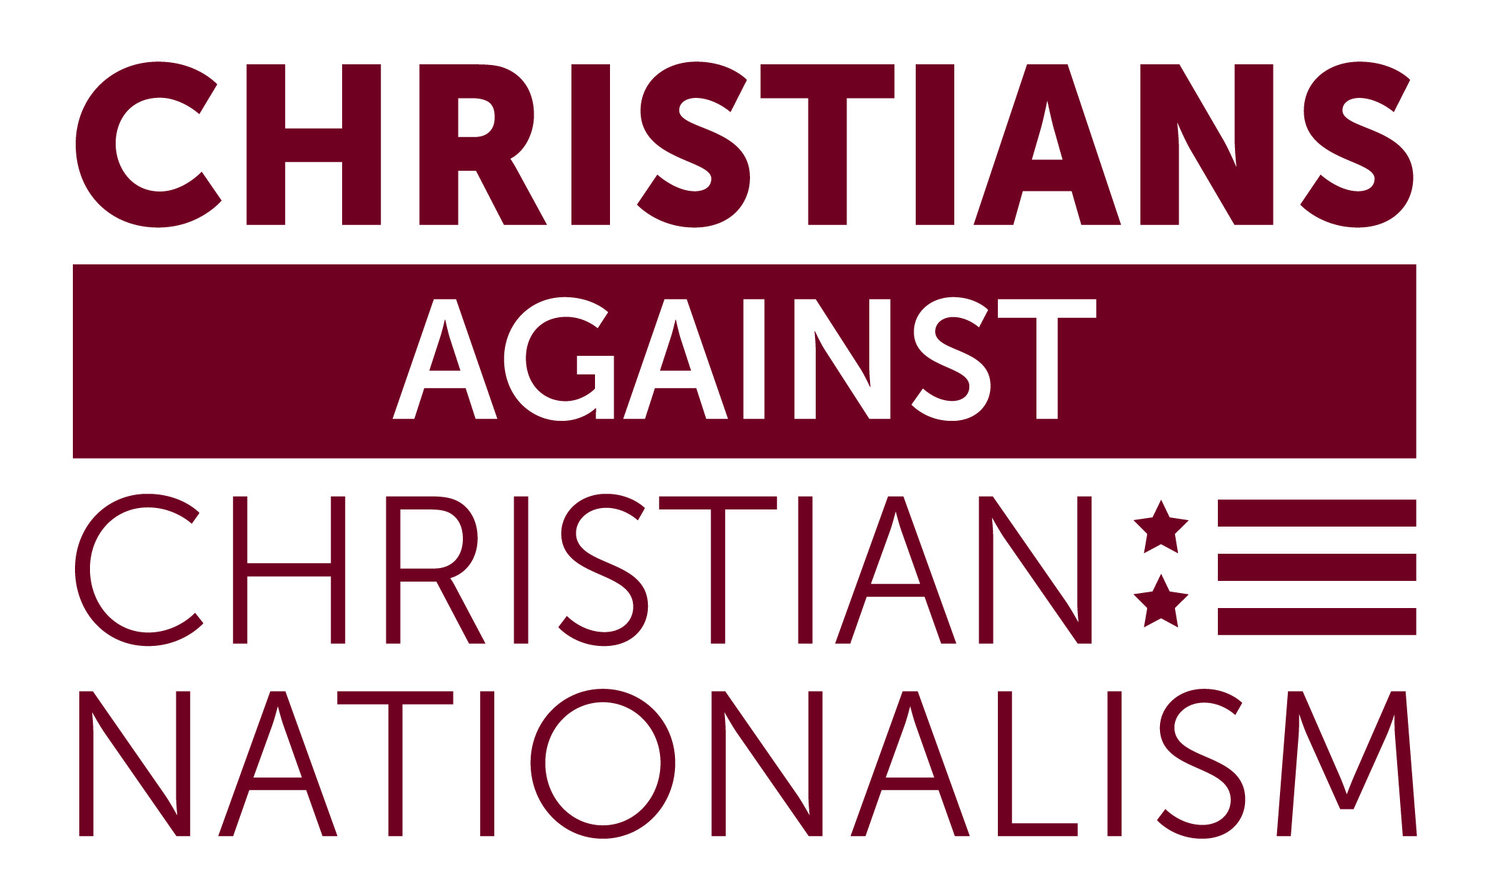 www.christiansagainstchristiannationalism.org